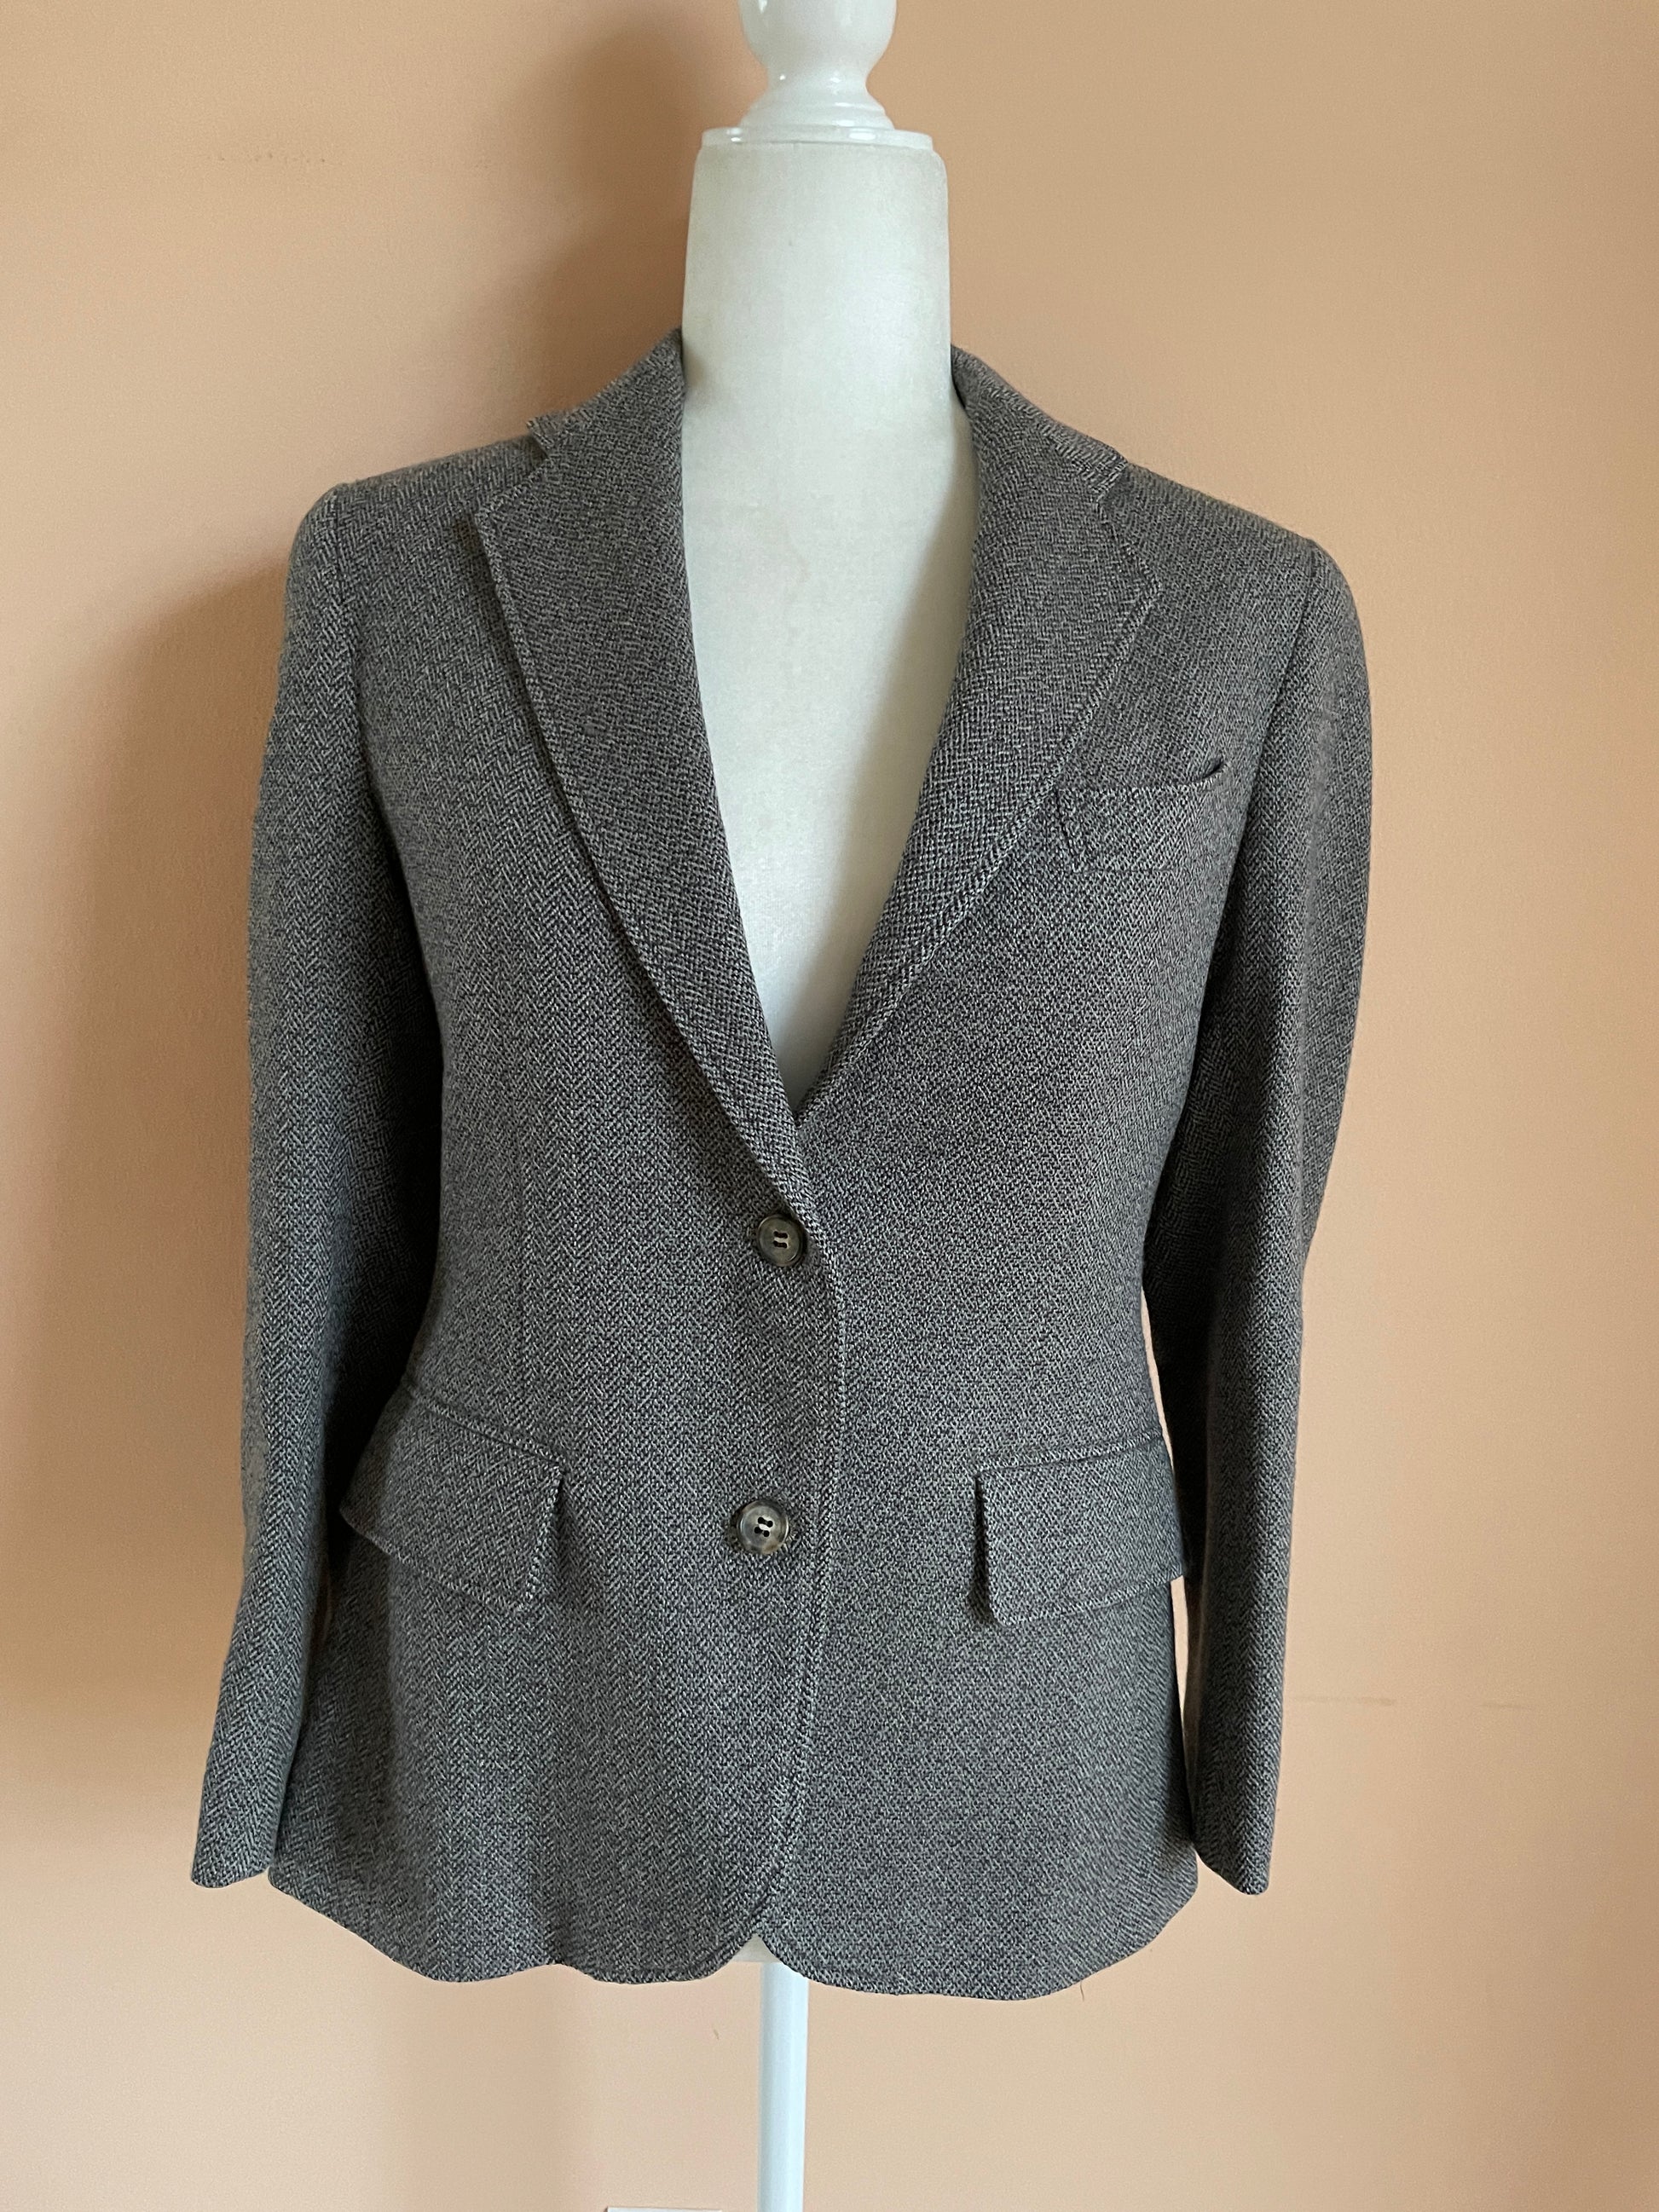 80s Gray blazer jacket  80s Wool Blend Classic Gray Blazer Jacket